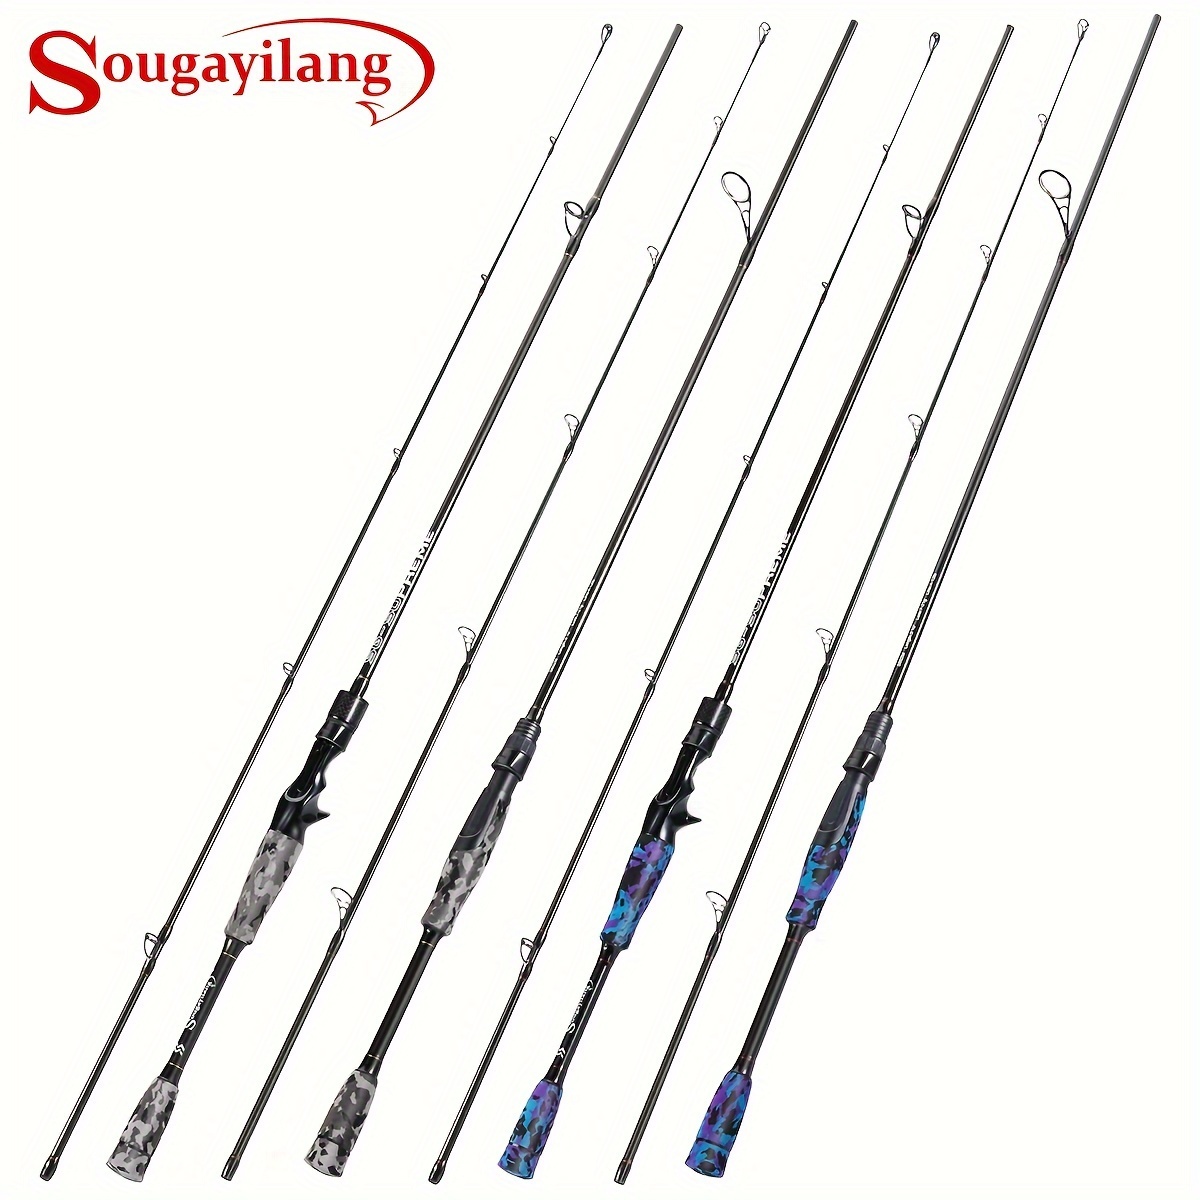 1 Spool Metallic Fishing Rod Wrapping Thread Rod Tying Guide